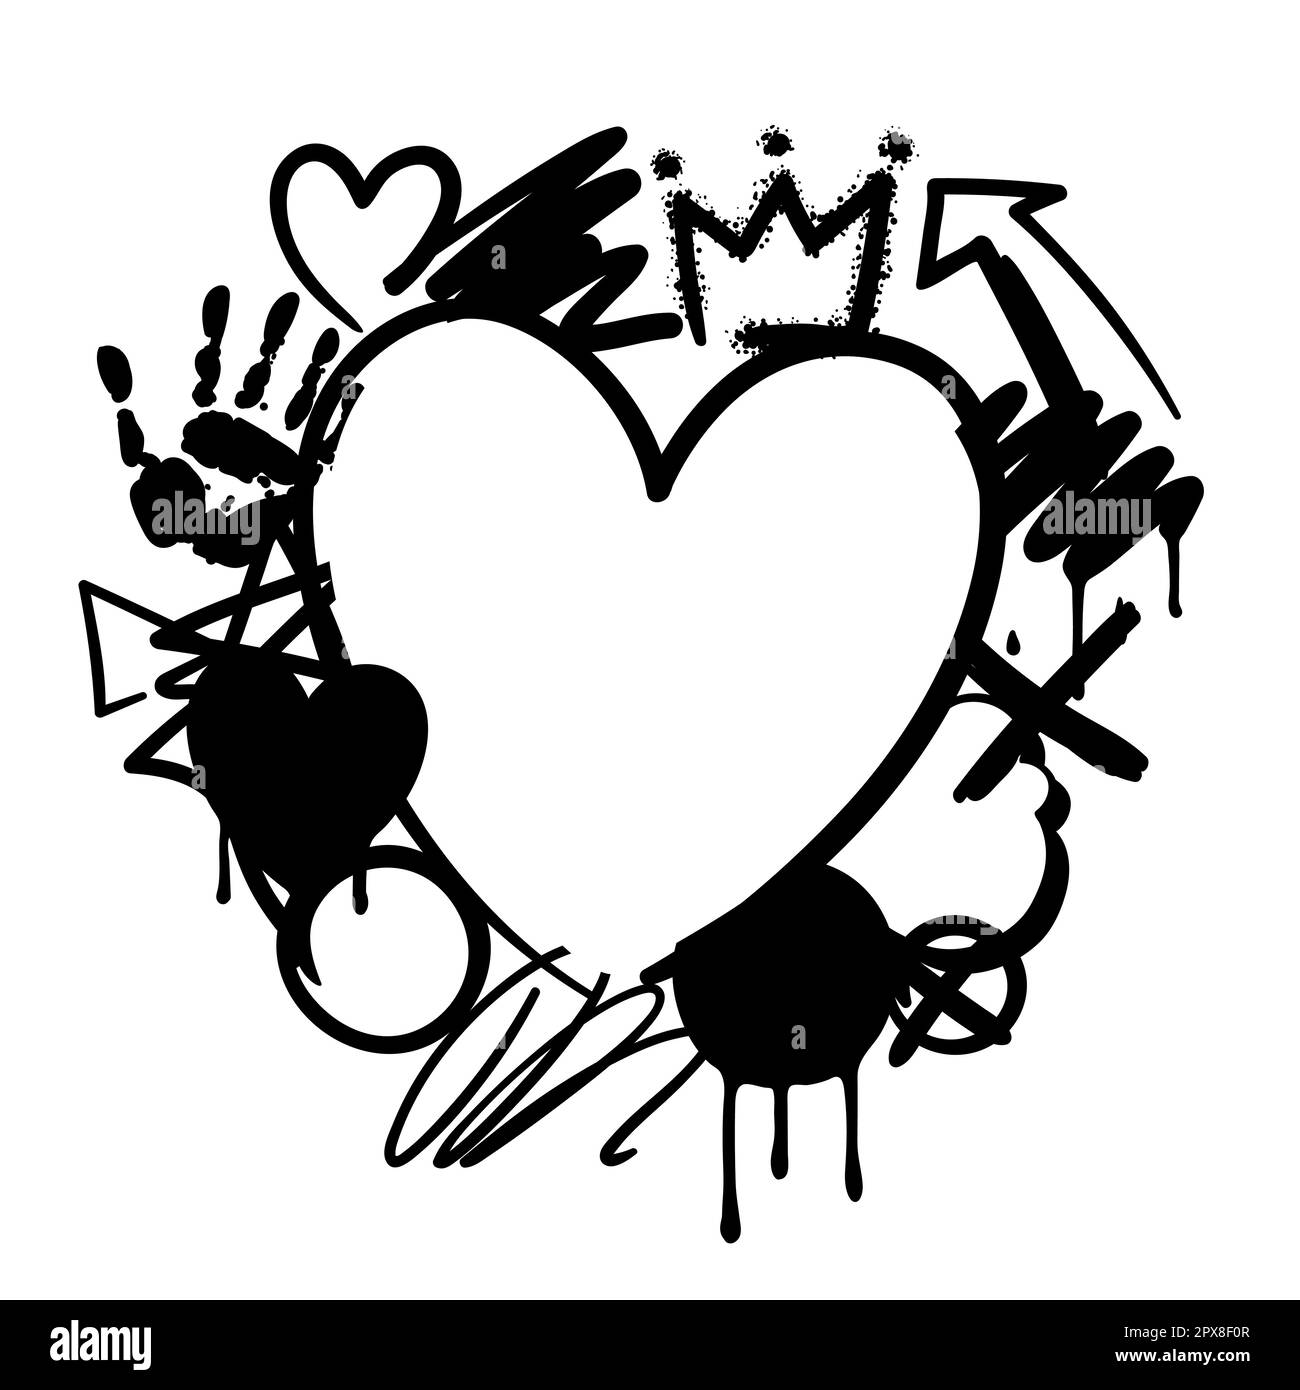 Hintergrund mit Graffiti-Symbolen. Abstraktes Grunge Creative Image. Stock Vektor